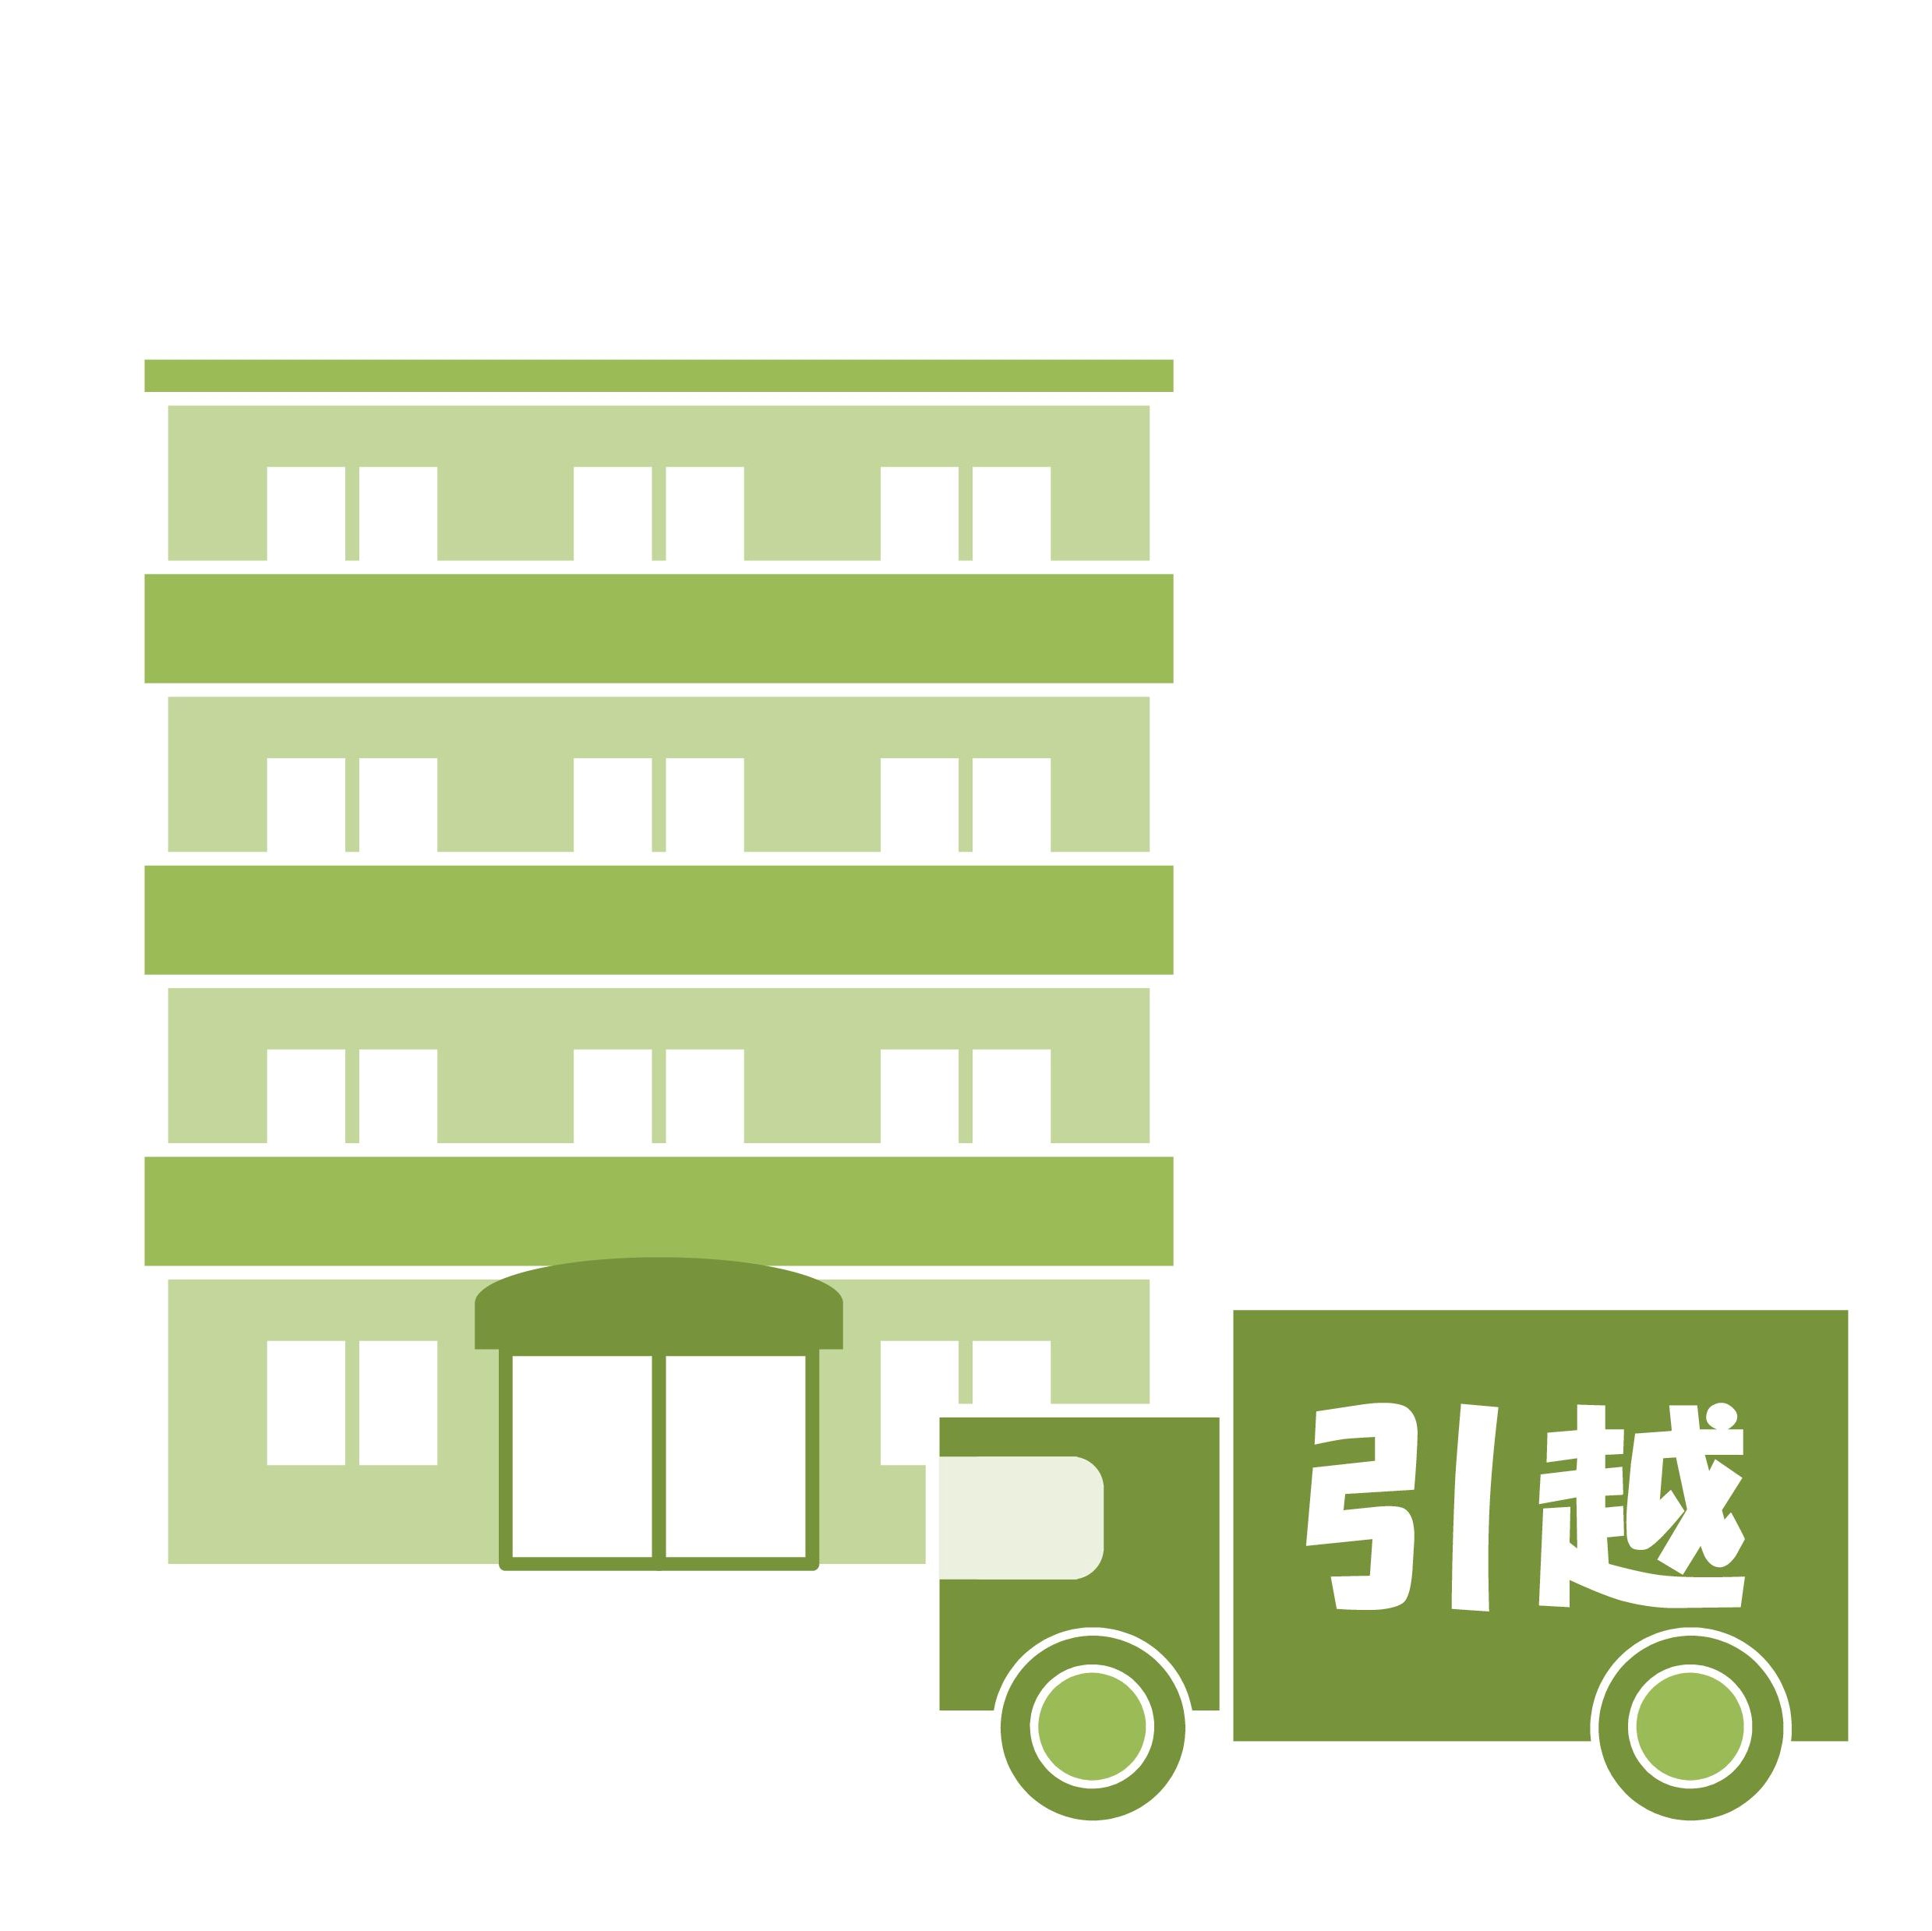 東京都品川区、港区エリアを中心に賃貸住宅、分譲住宅の物件をお探し致します。